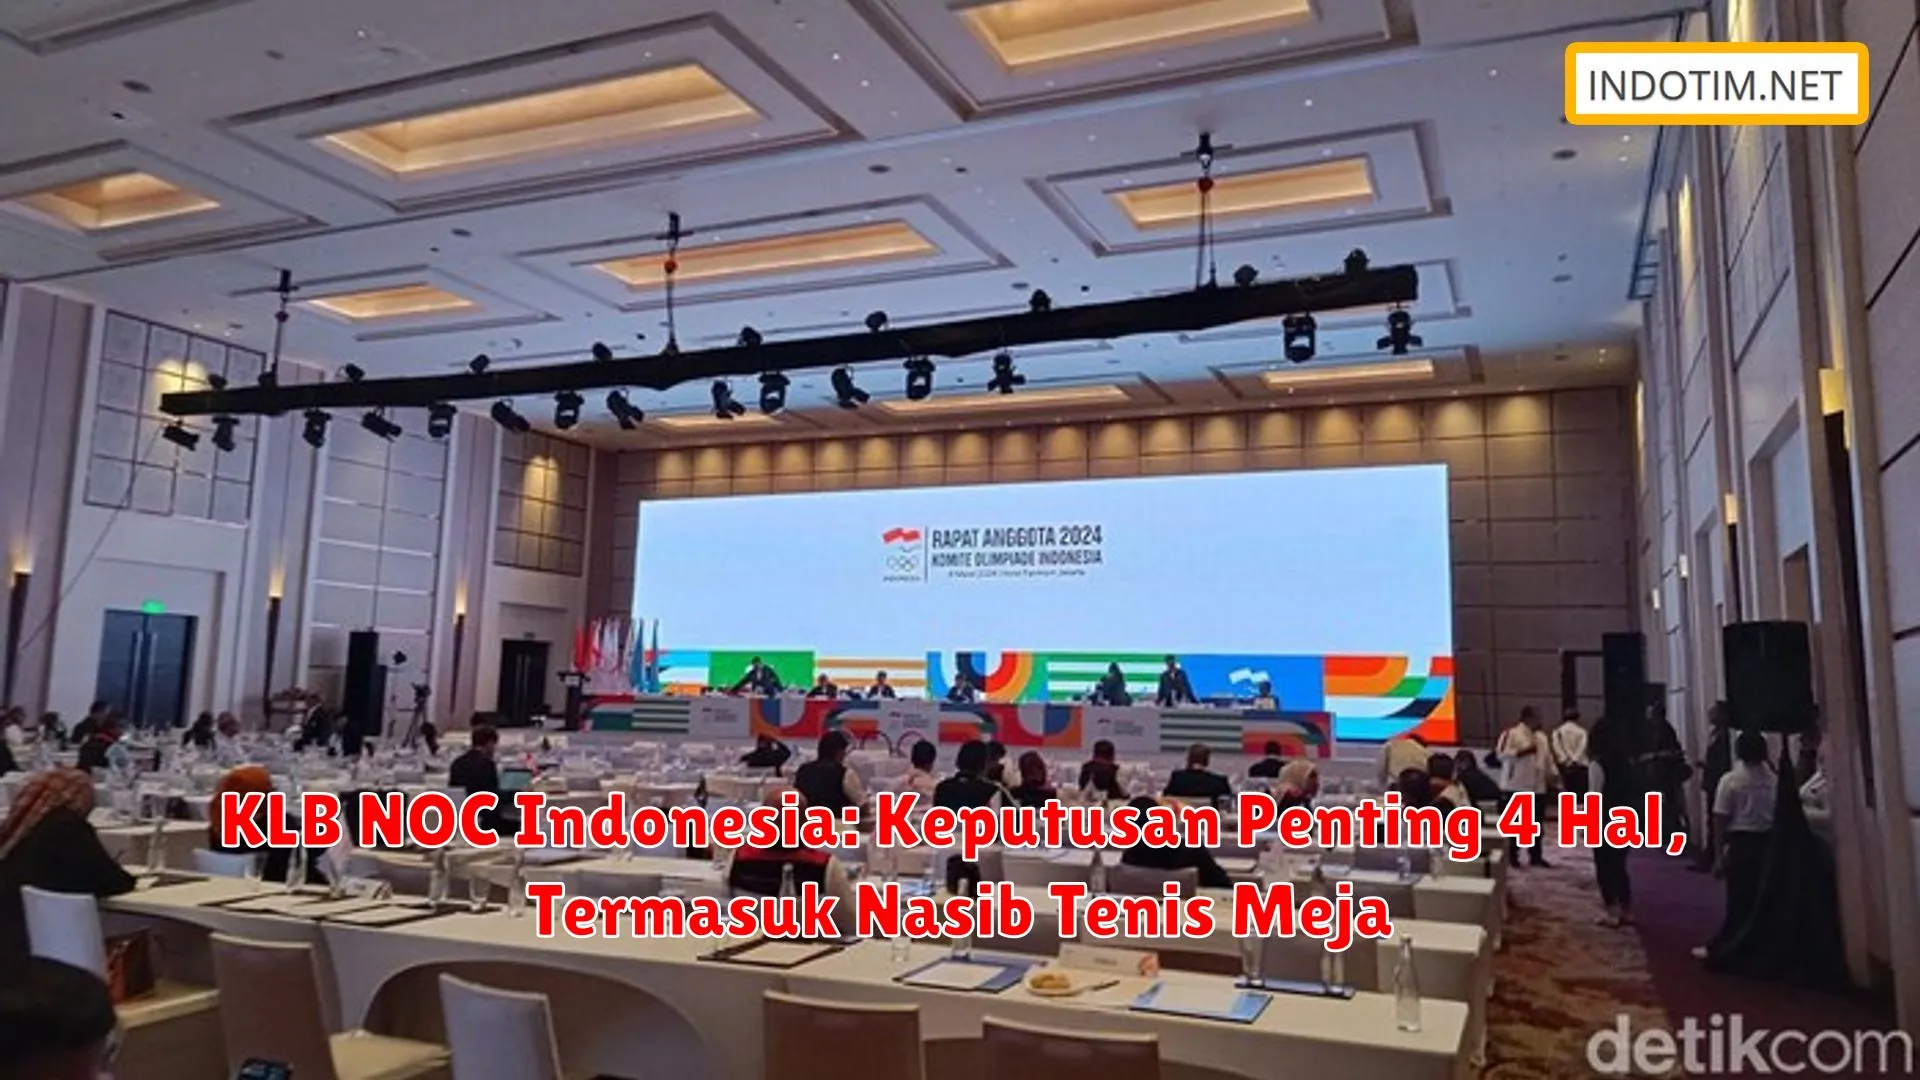 KLB NOC Indonesia: Keputusan Penting 4 Hal, Termasuk Nasib Tenis Meja